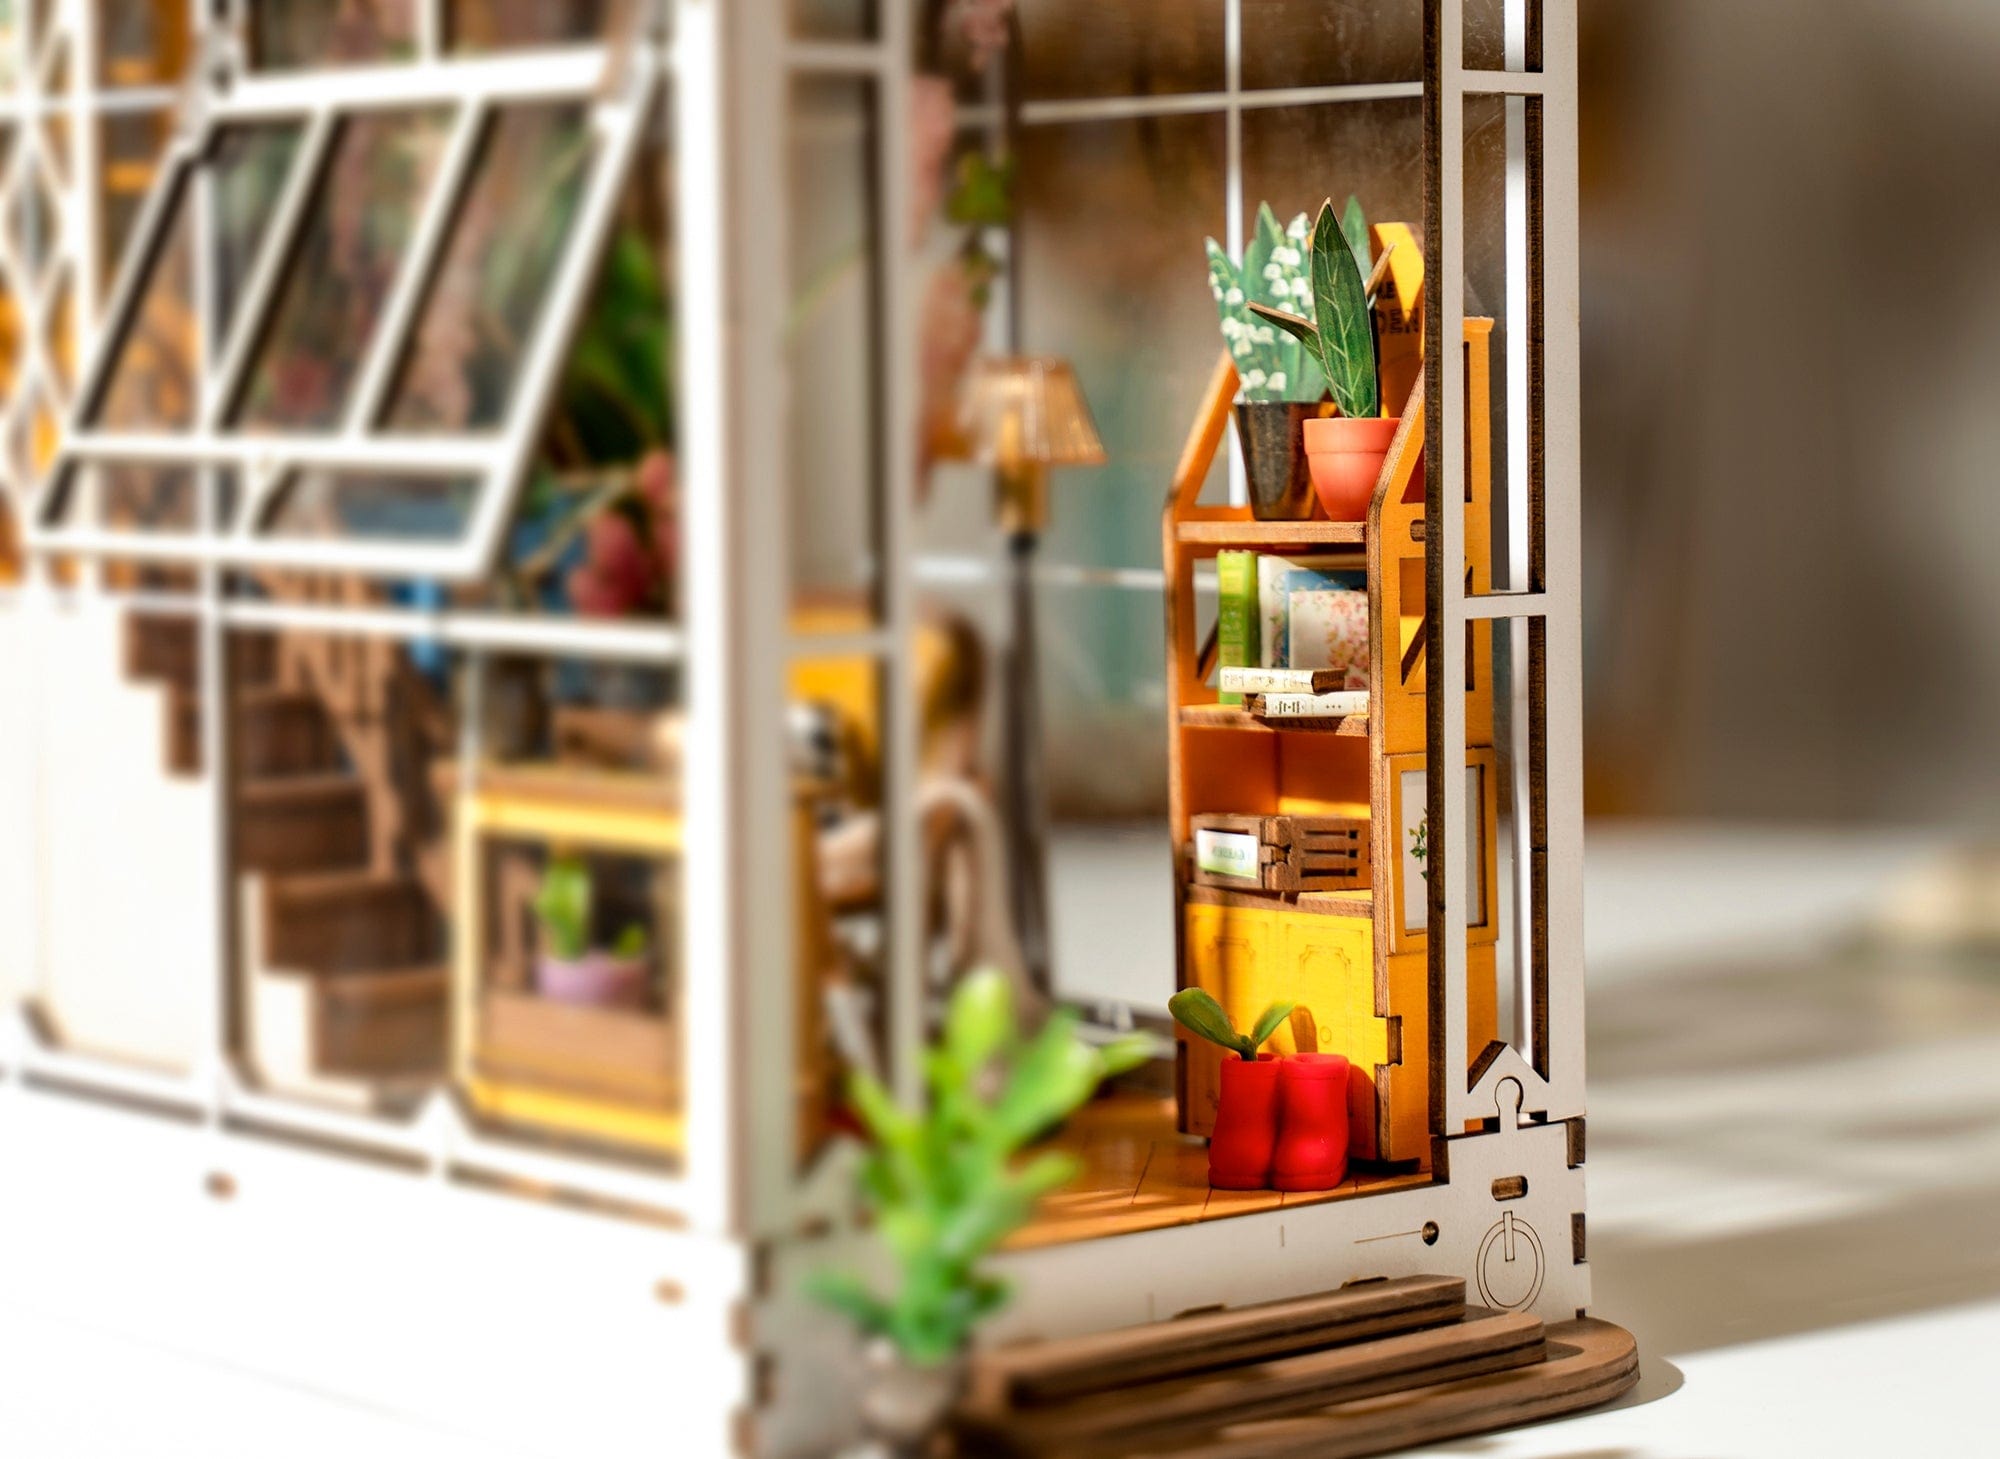 Hands Craft DIY Miniature House Book Nook Kit: Garden House Kawaii Gifts